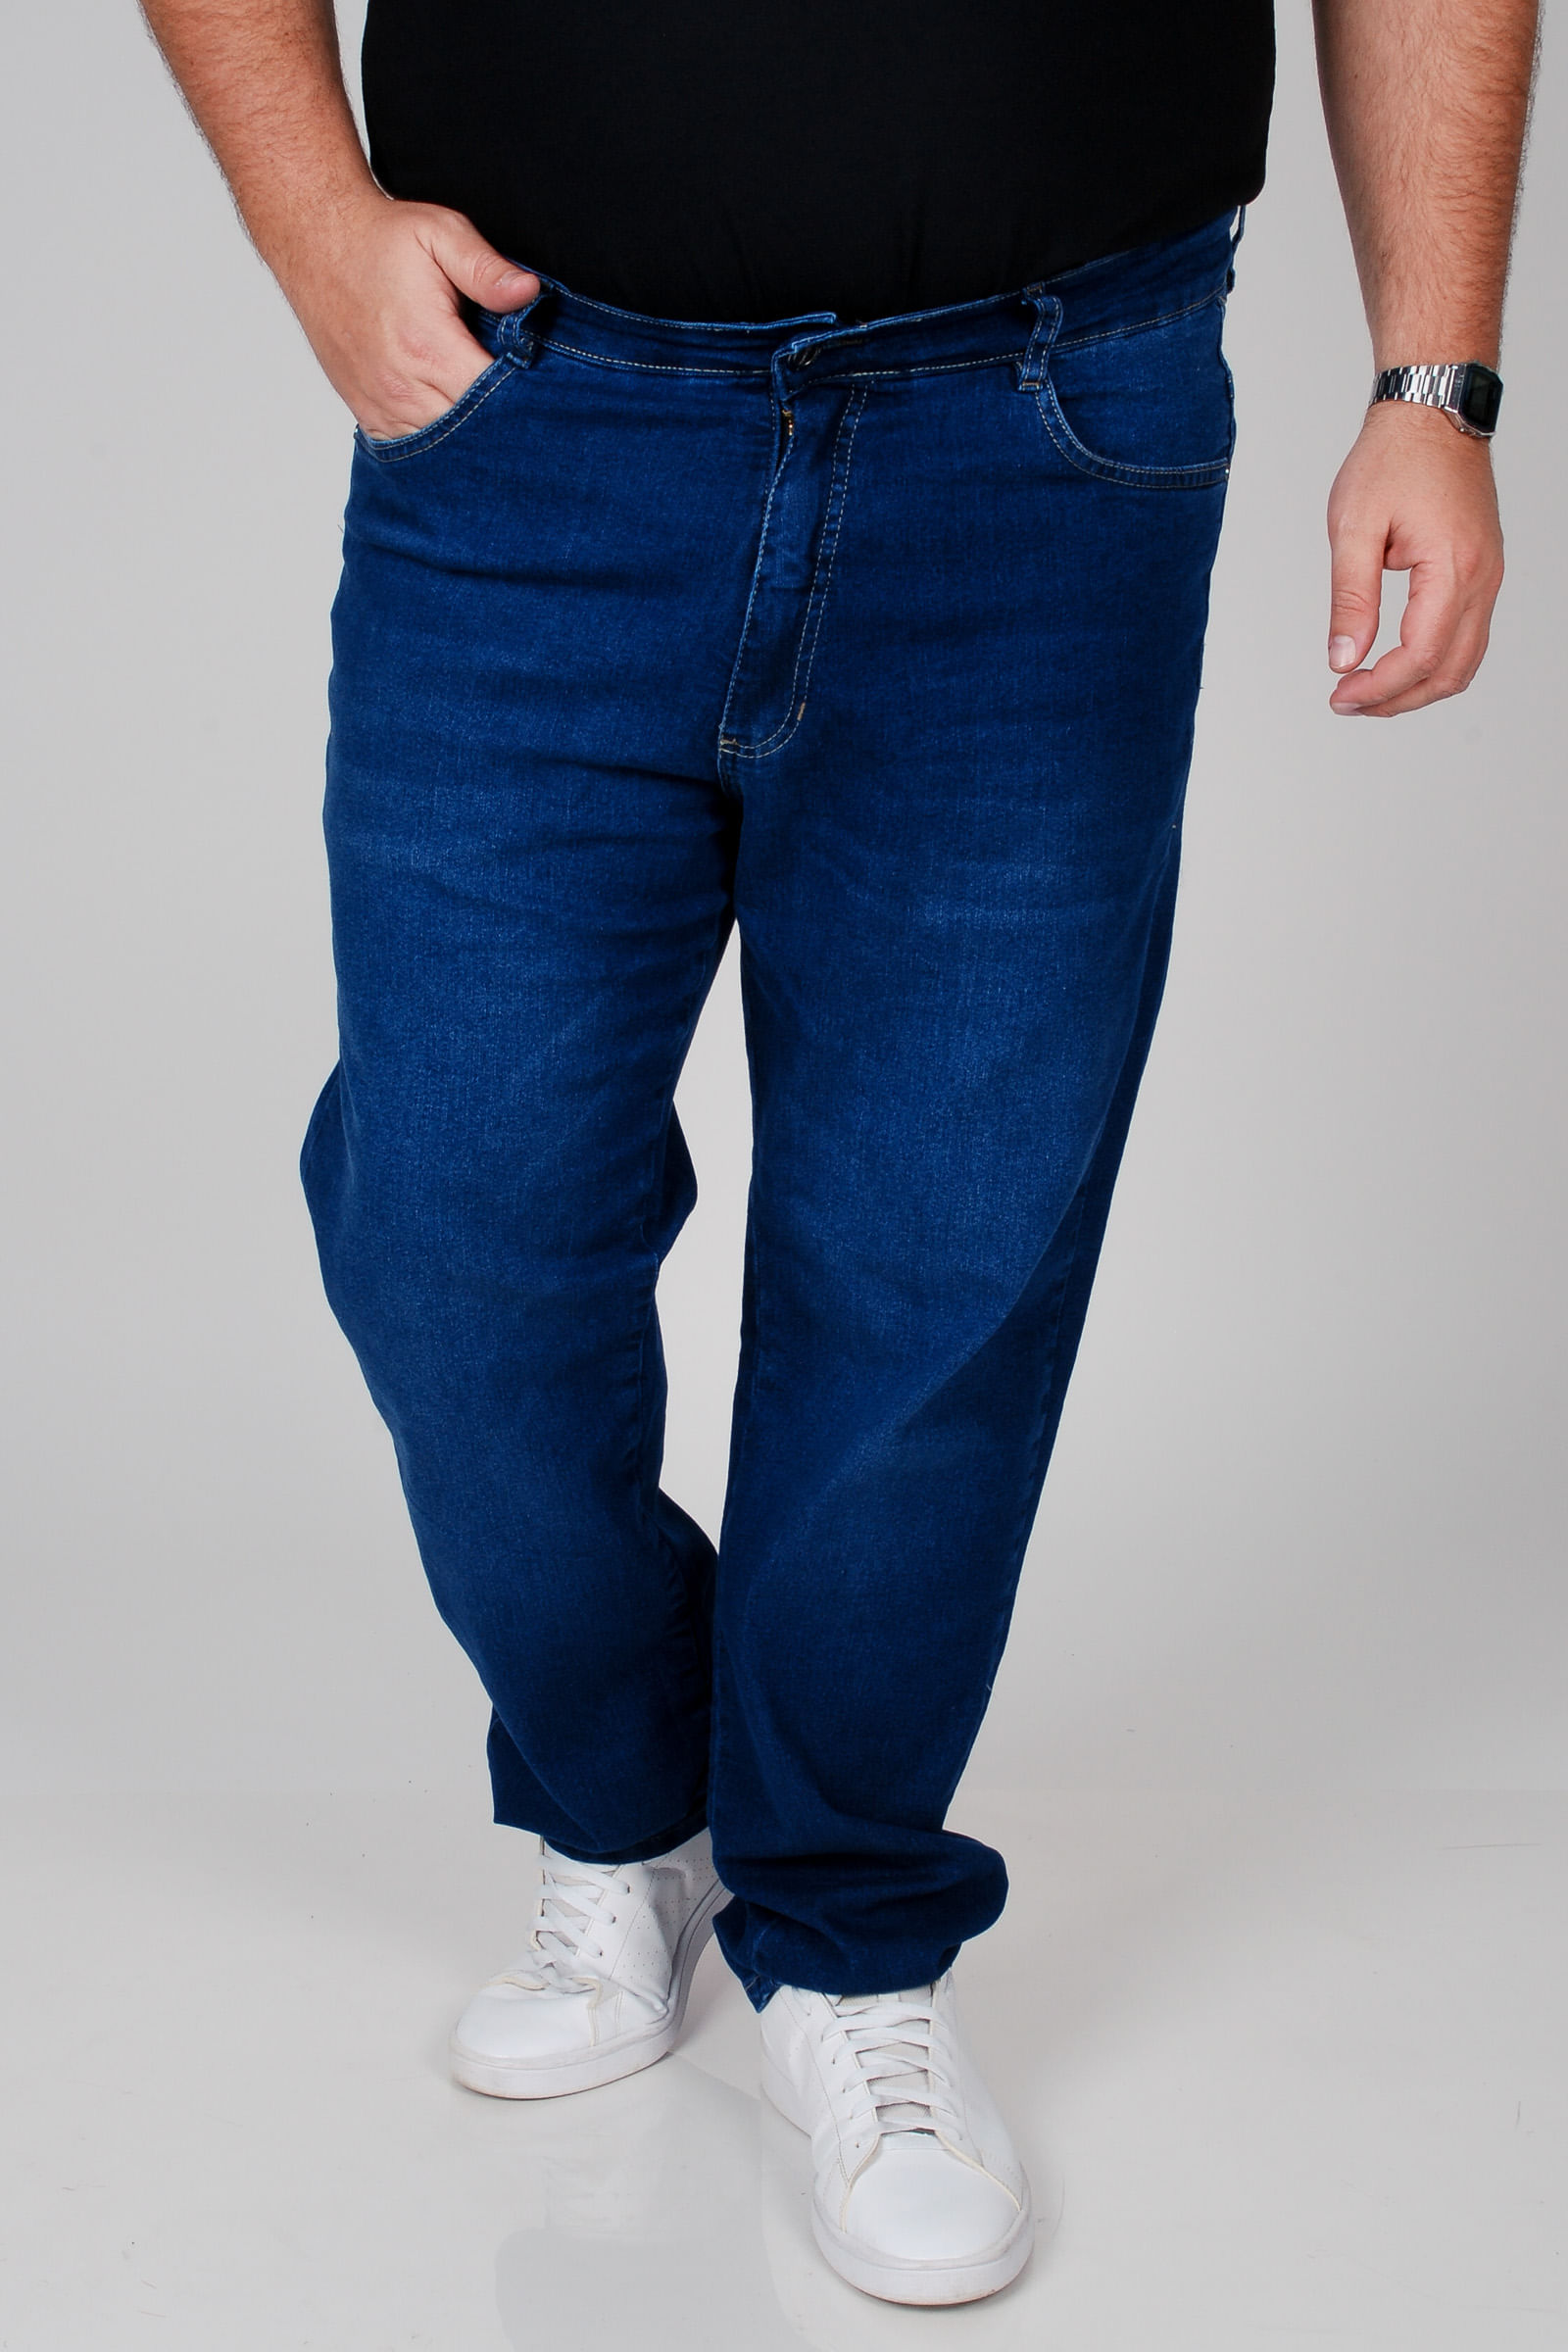 Calca-jeans-comfort-reta-plus-size